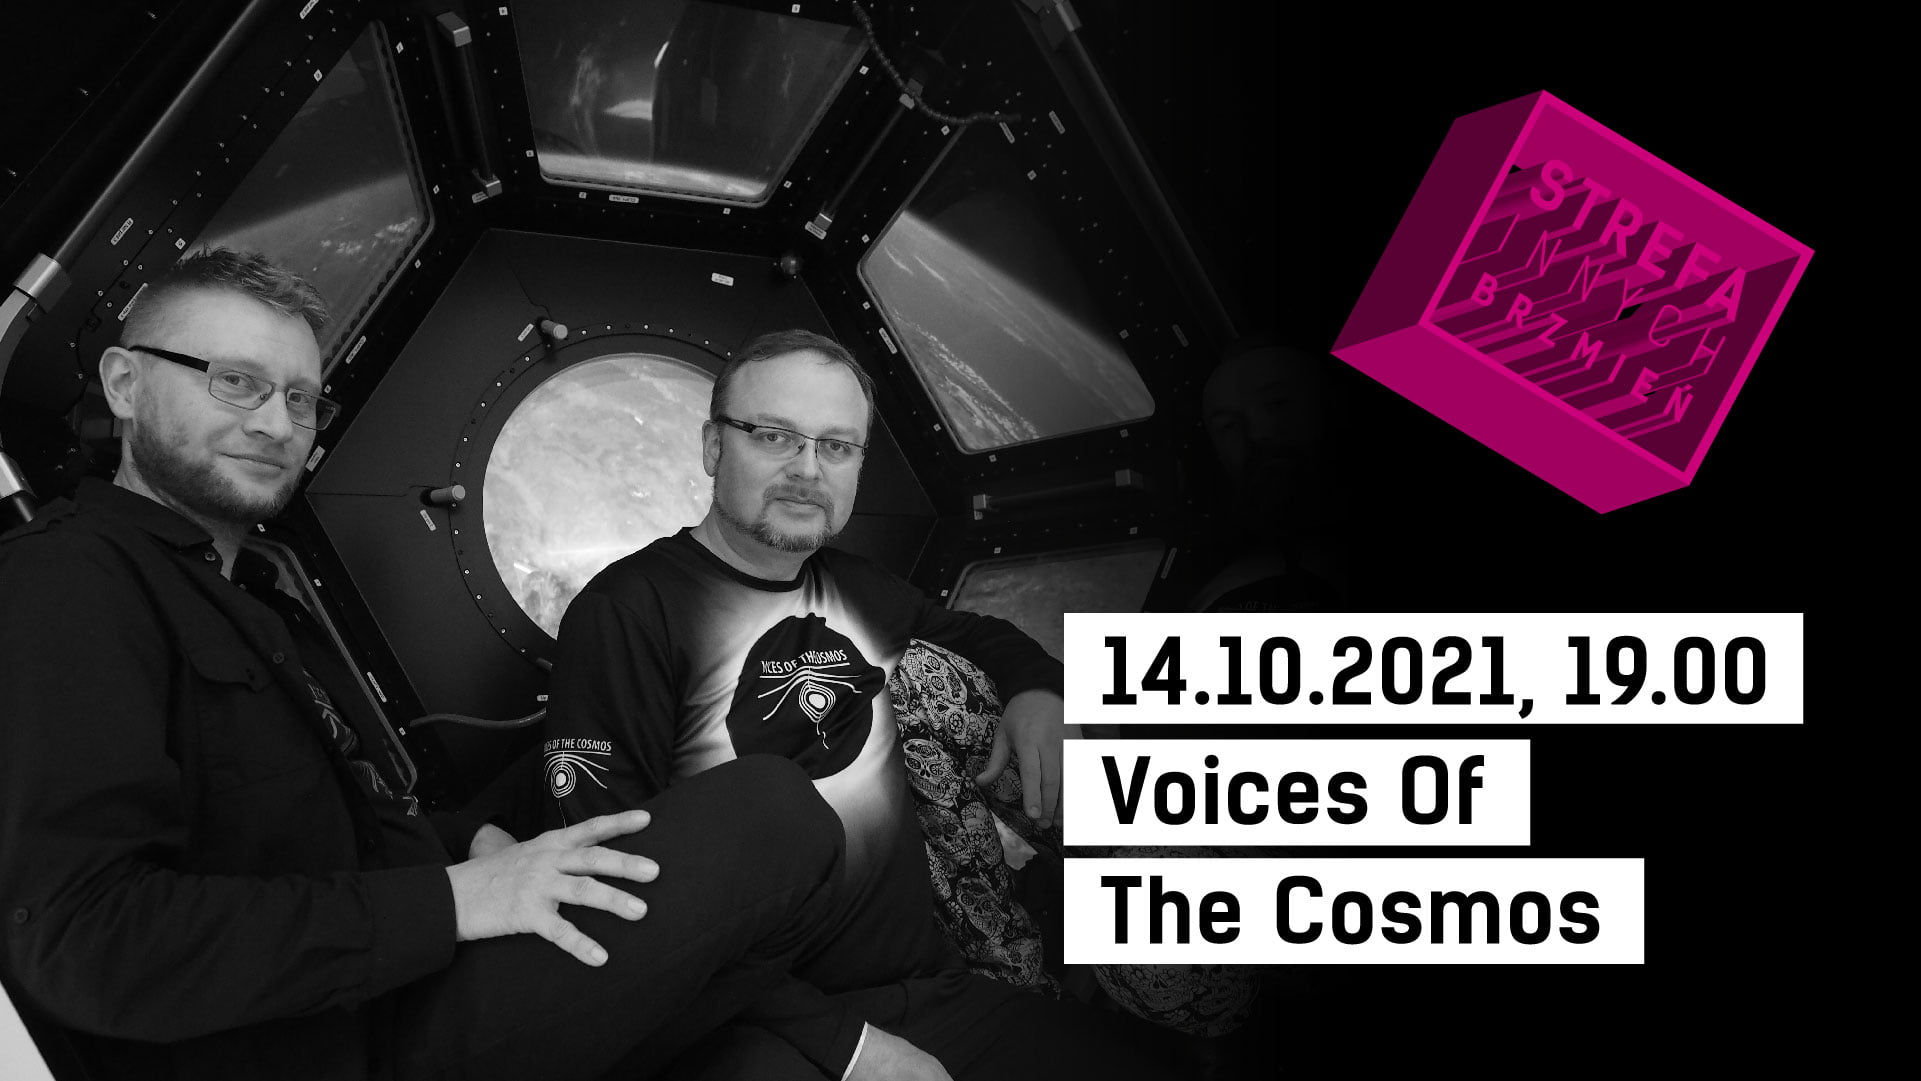 Zdjęcie trzech mężczyzn. logo Strefa Innych Brzmień oraz napis 14.10.2021, 19.00 Voices Of The Cosmos.